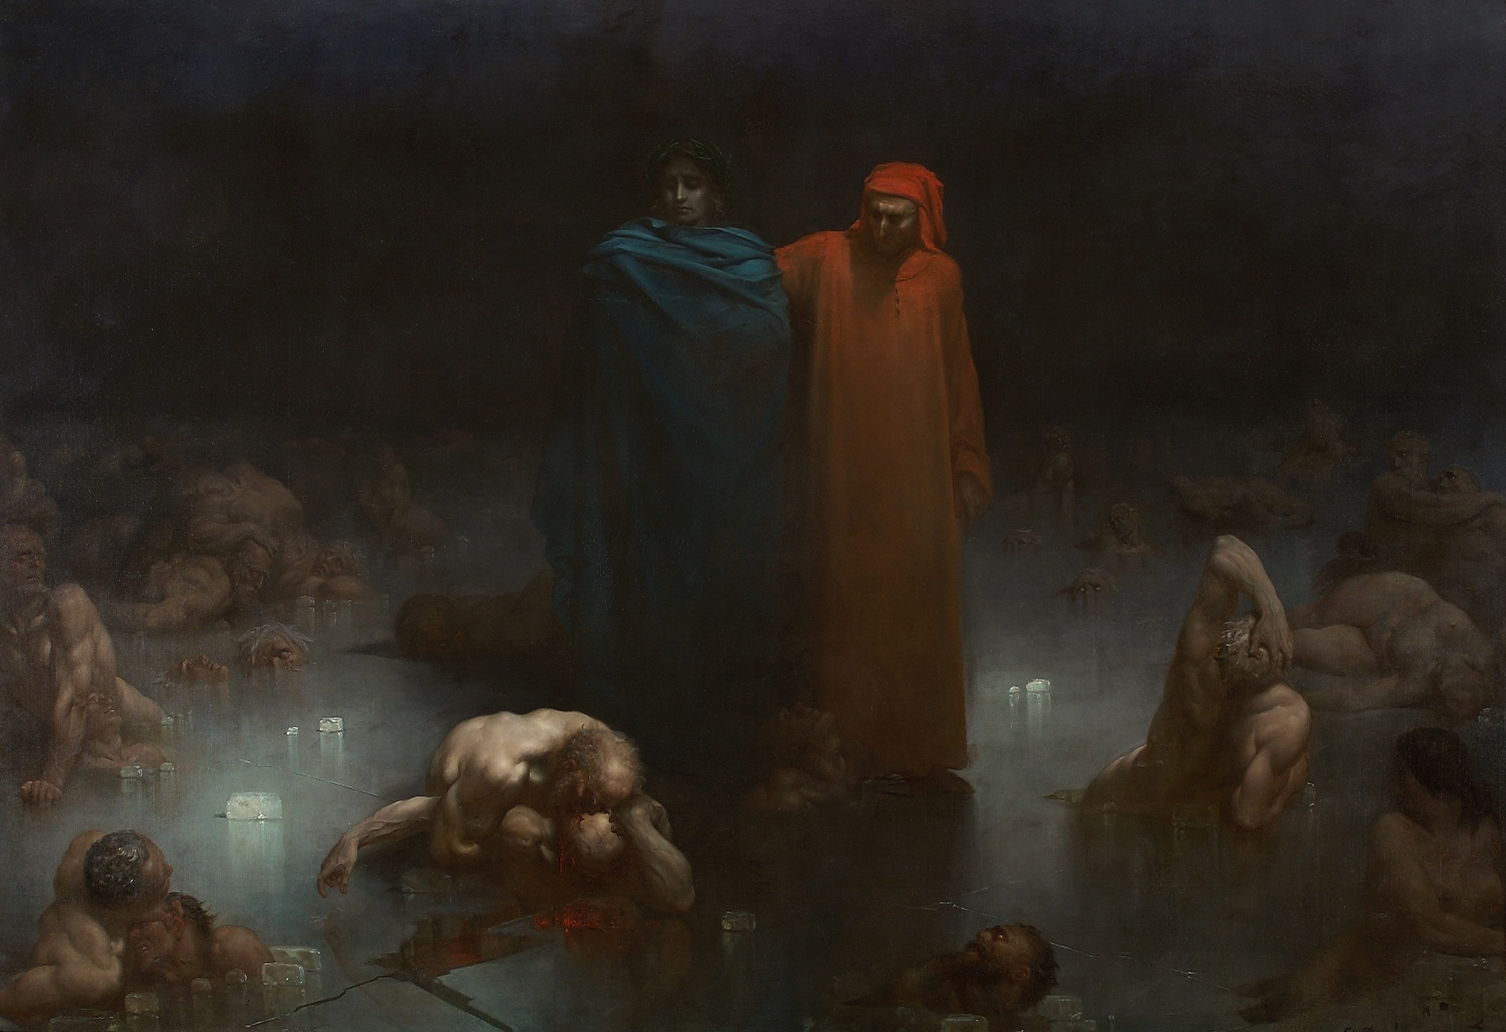 Gustave Doré Divine Comedy Set: Dante's Inferno & Purgatory and Paradise  *NEW*